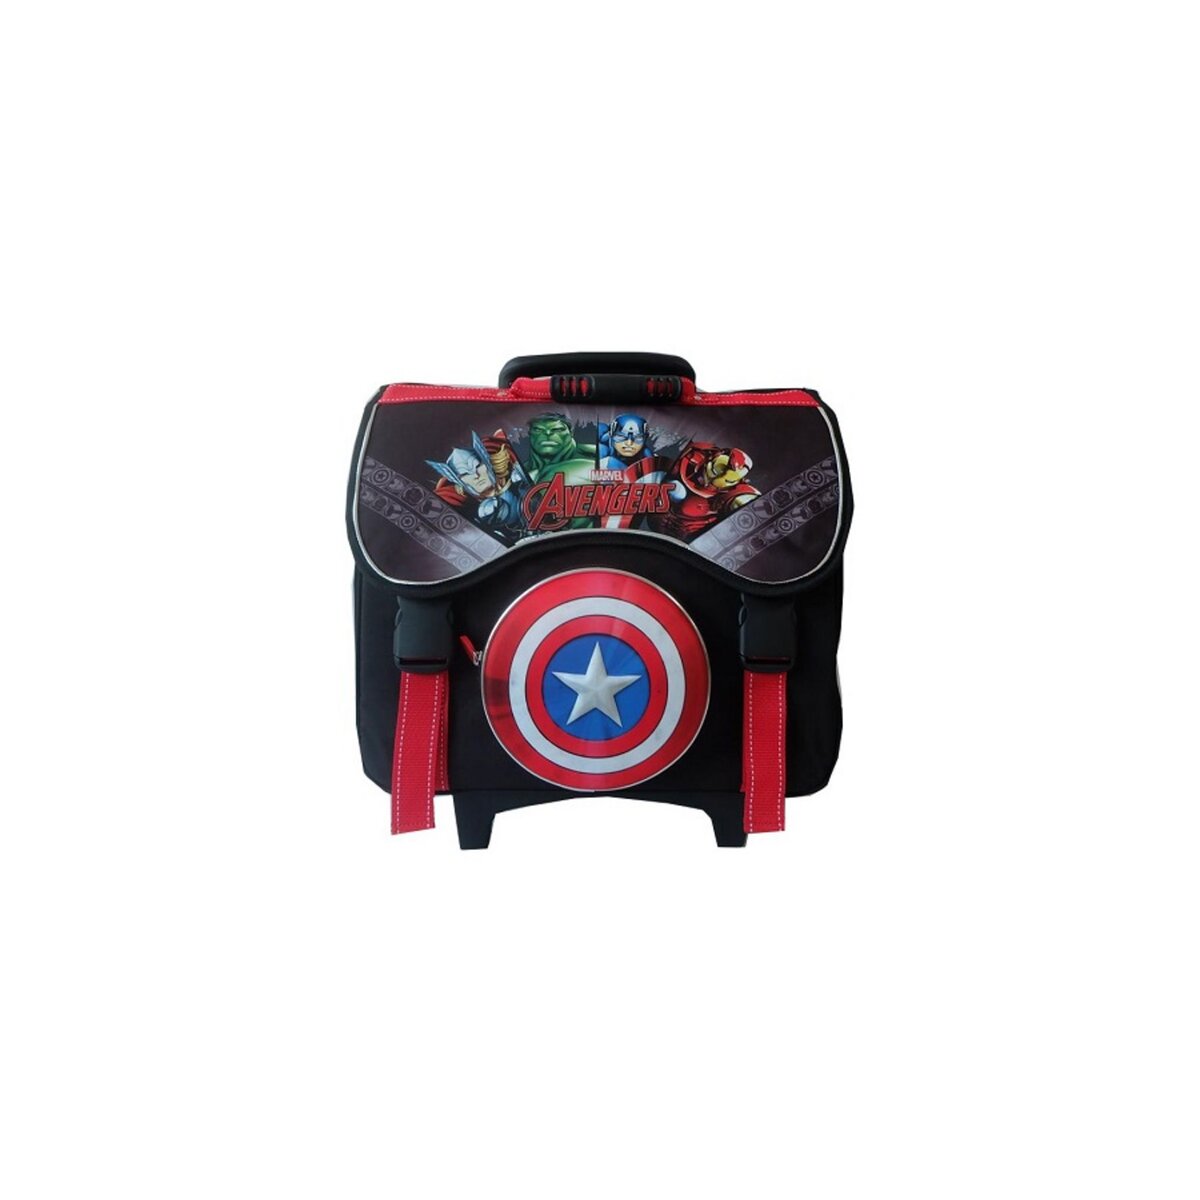 ALPA Cartable à roulettes Avengers 41 cm